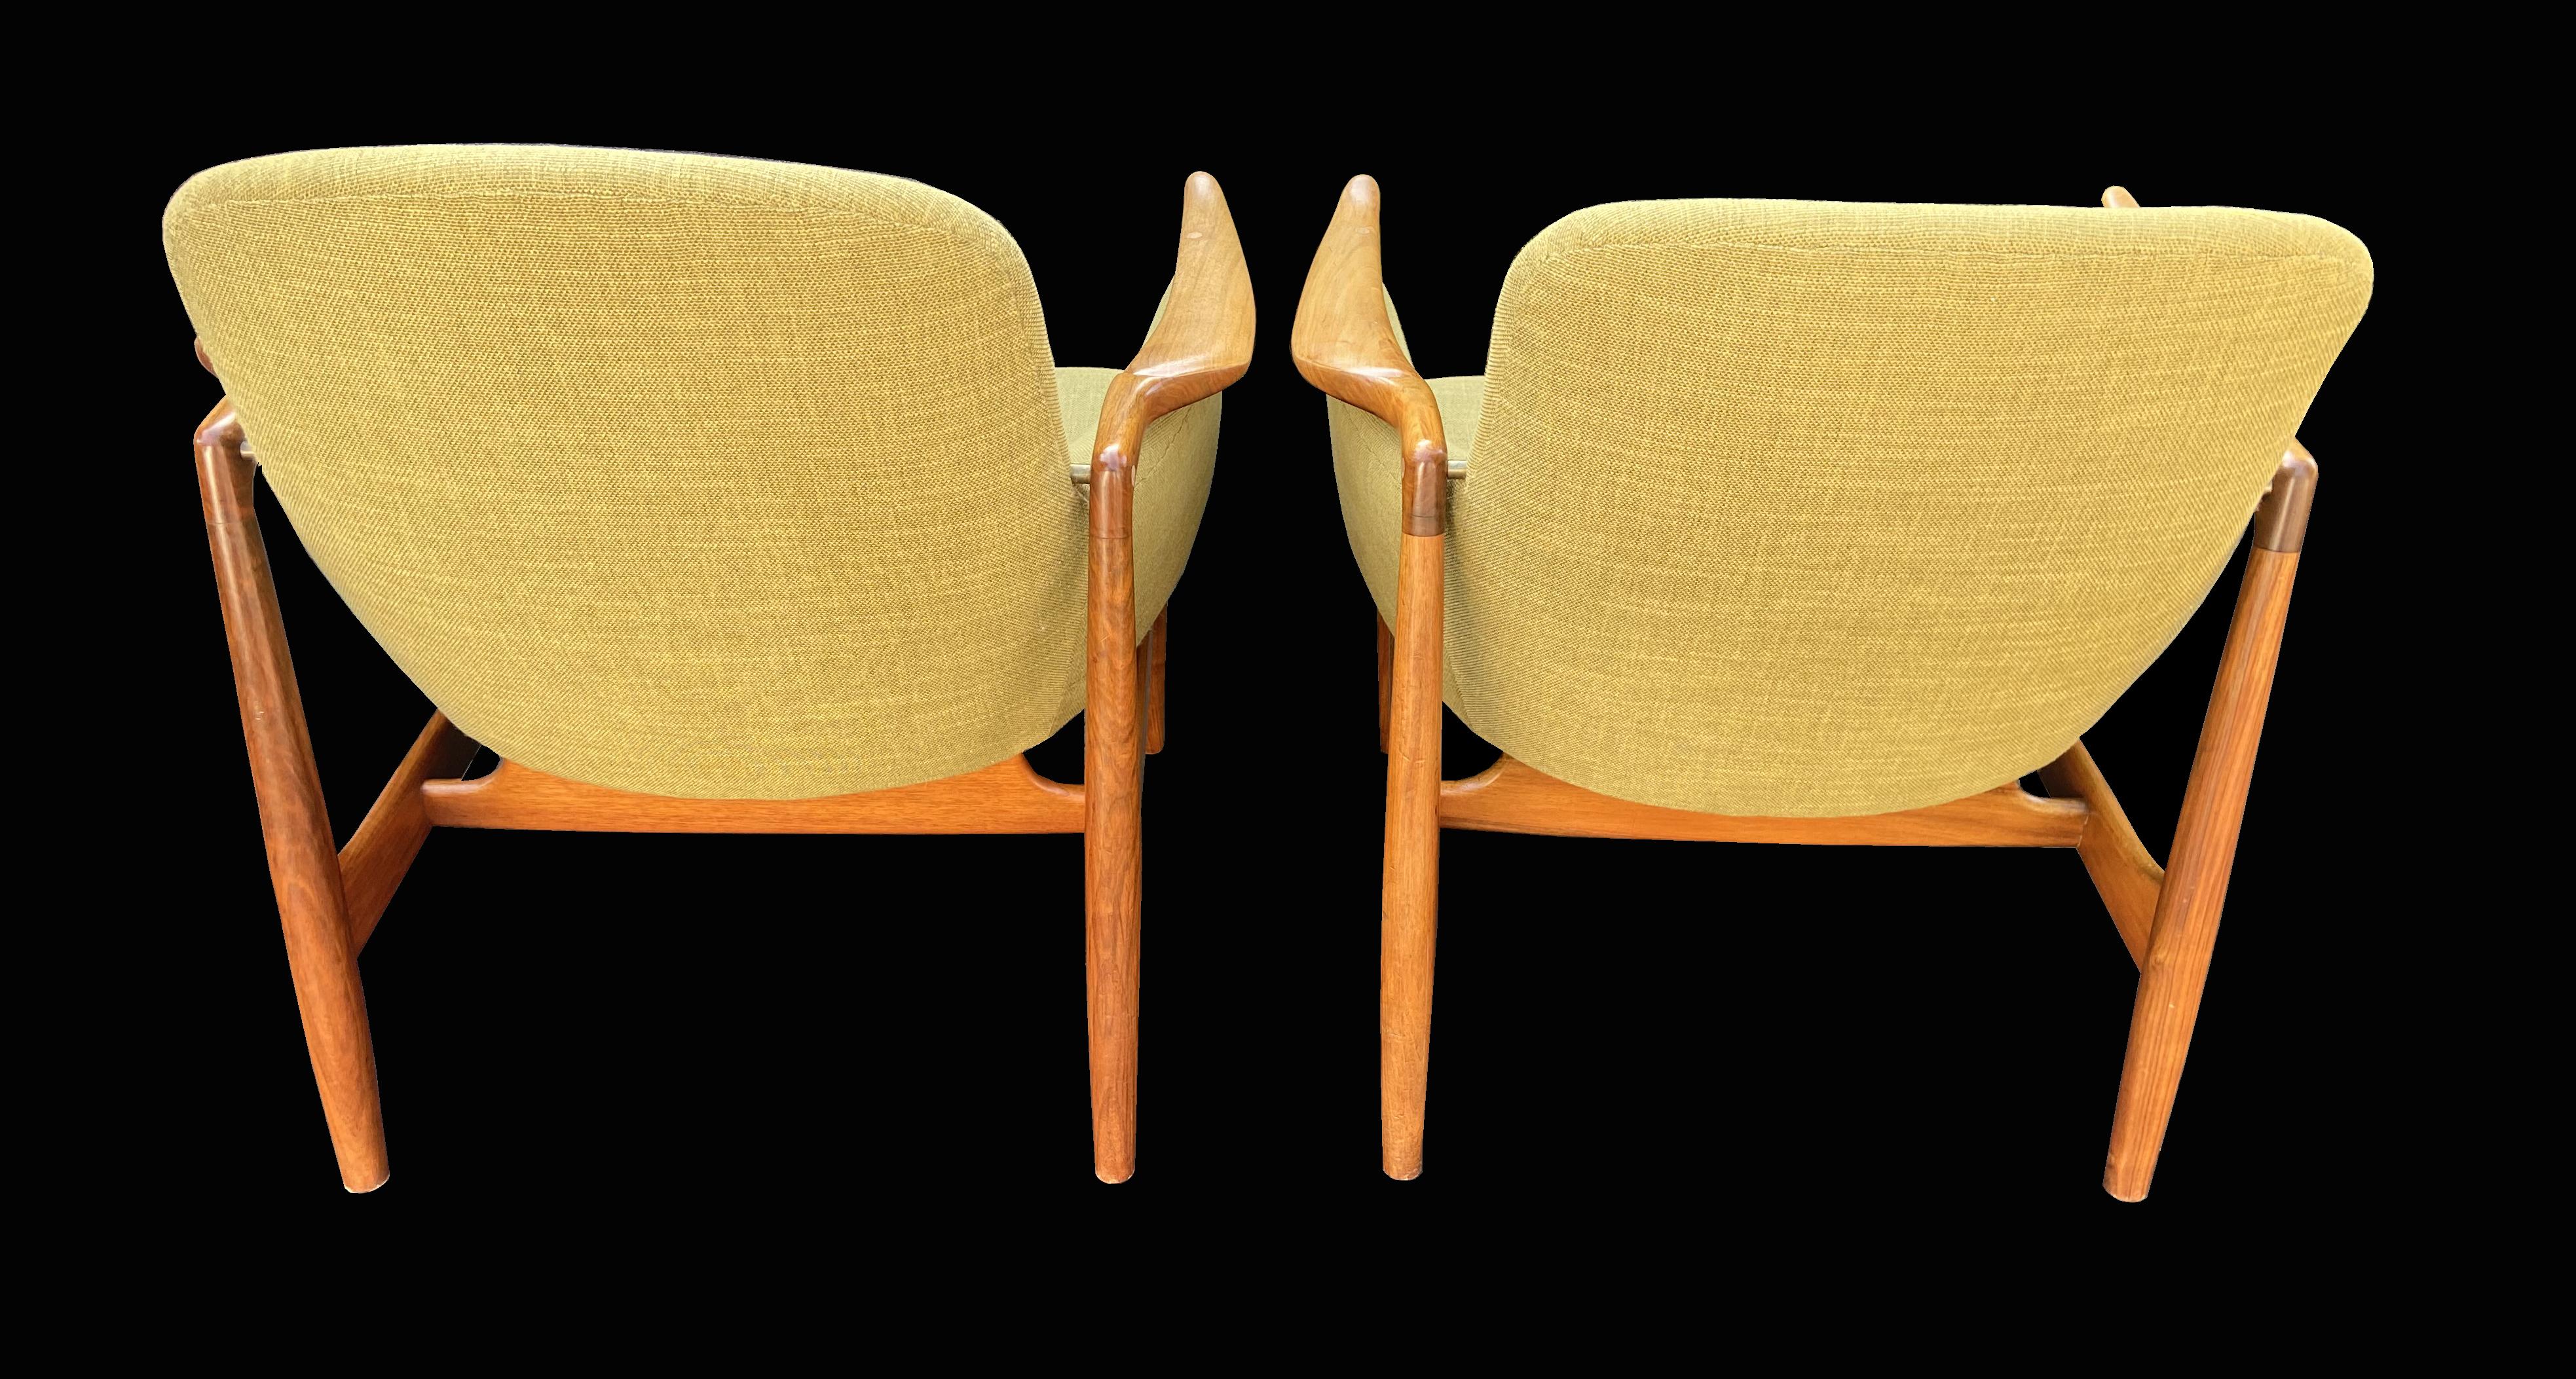 Il s'agit d'une très belle paire de chaises Heldly conçues par un maître du design de chaises, Finn Juhl, et fabriquées par un maître ébéniste, Niels Juhls.

Nous les avons achetés à leur propriétaire d'origine au Danemark, qui les avait achetés